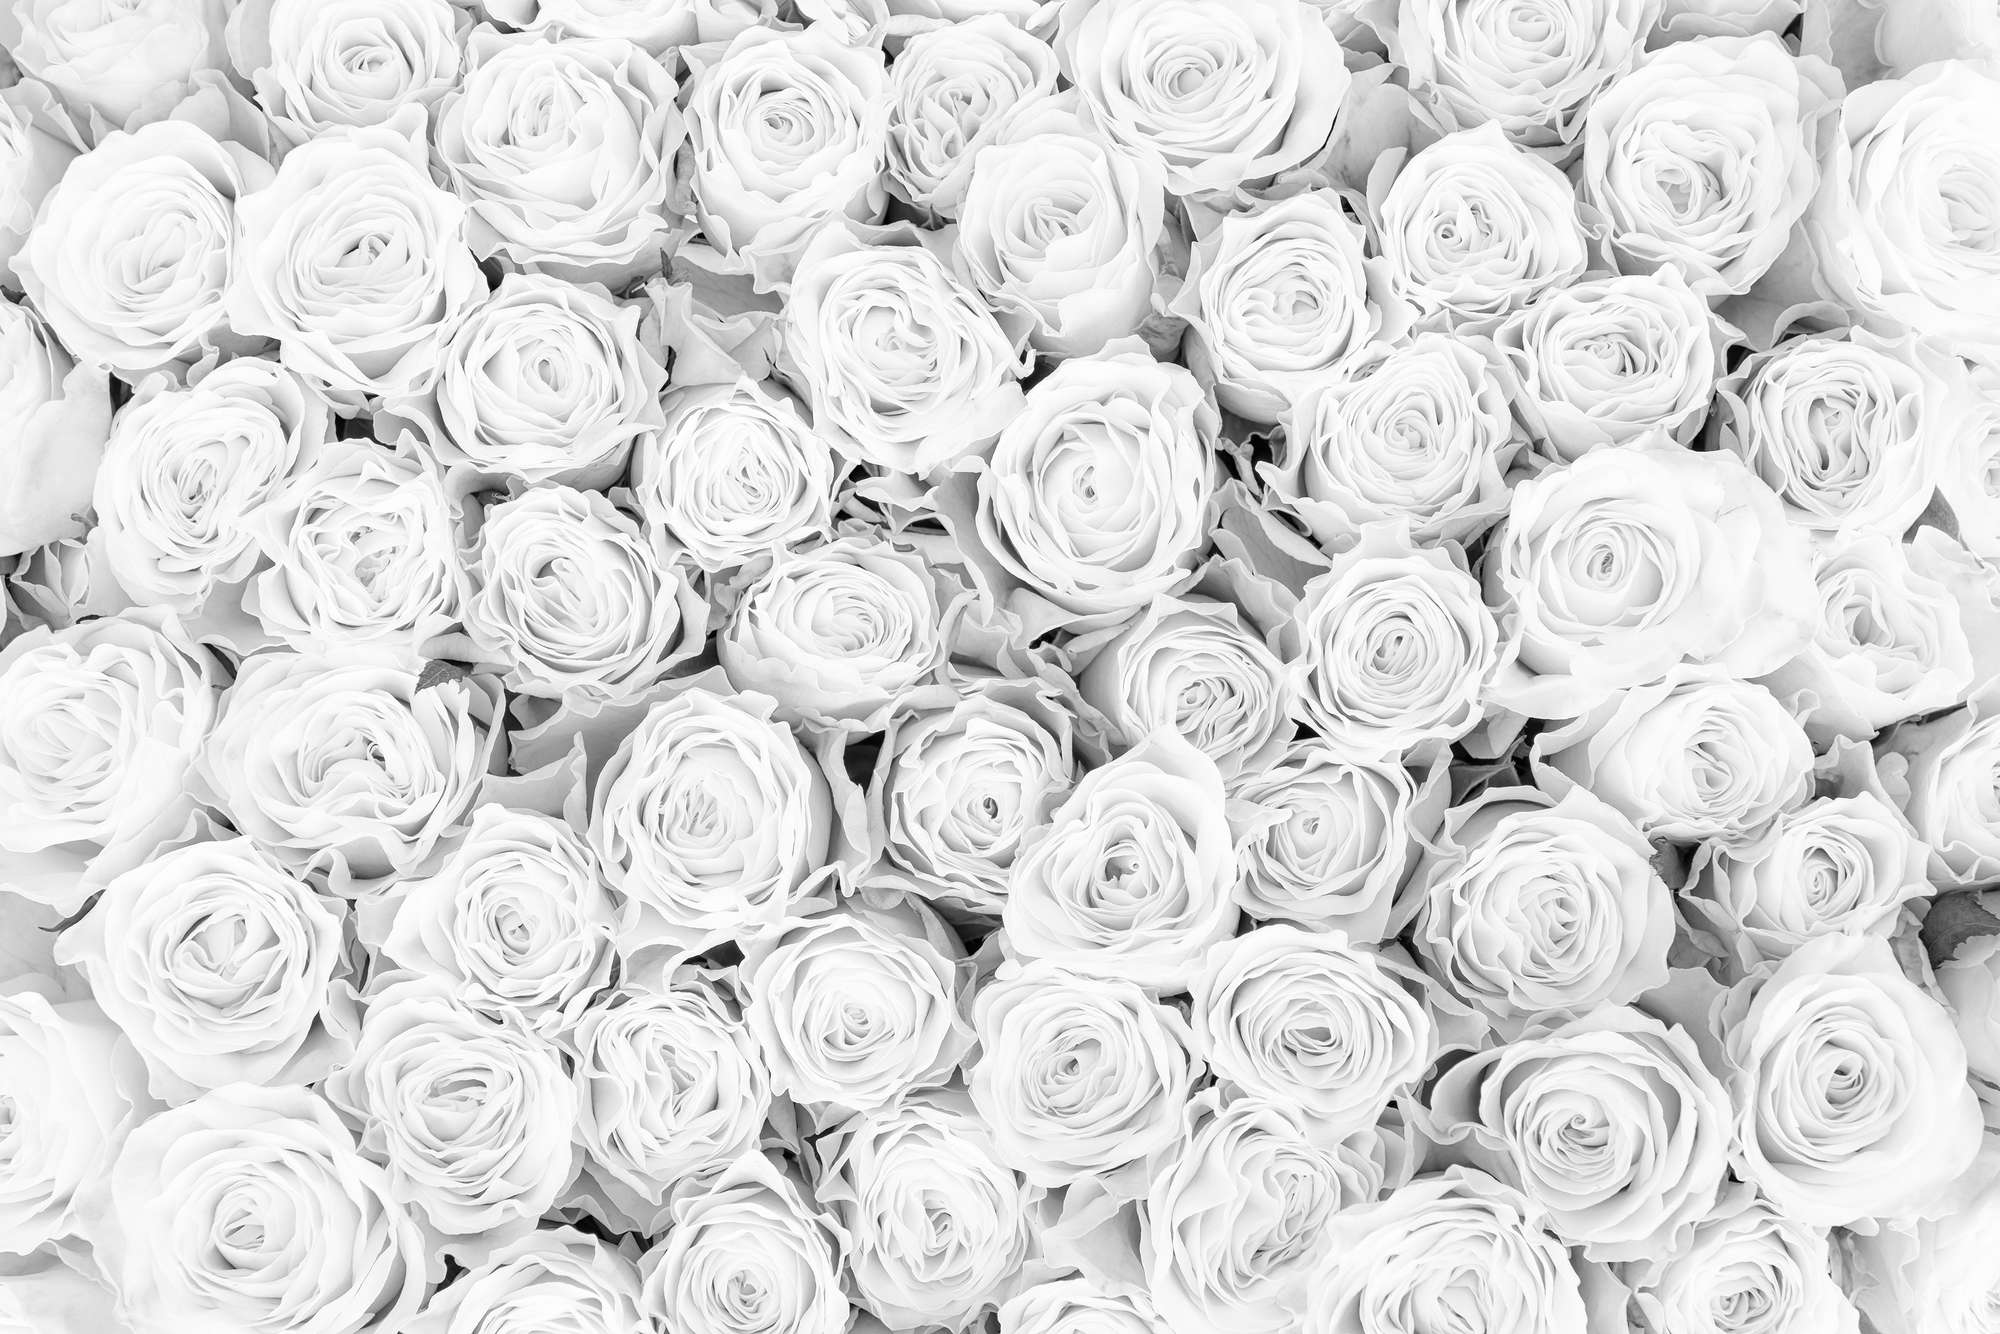             Plants mural white roses on matt smooth fleece
        